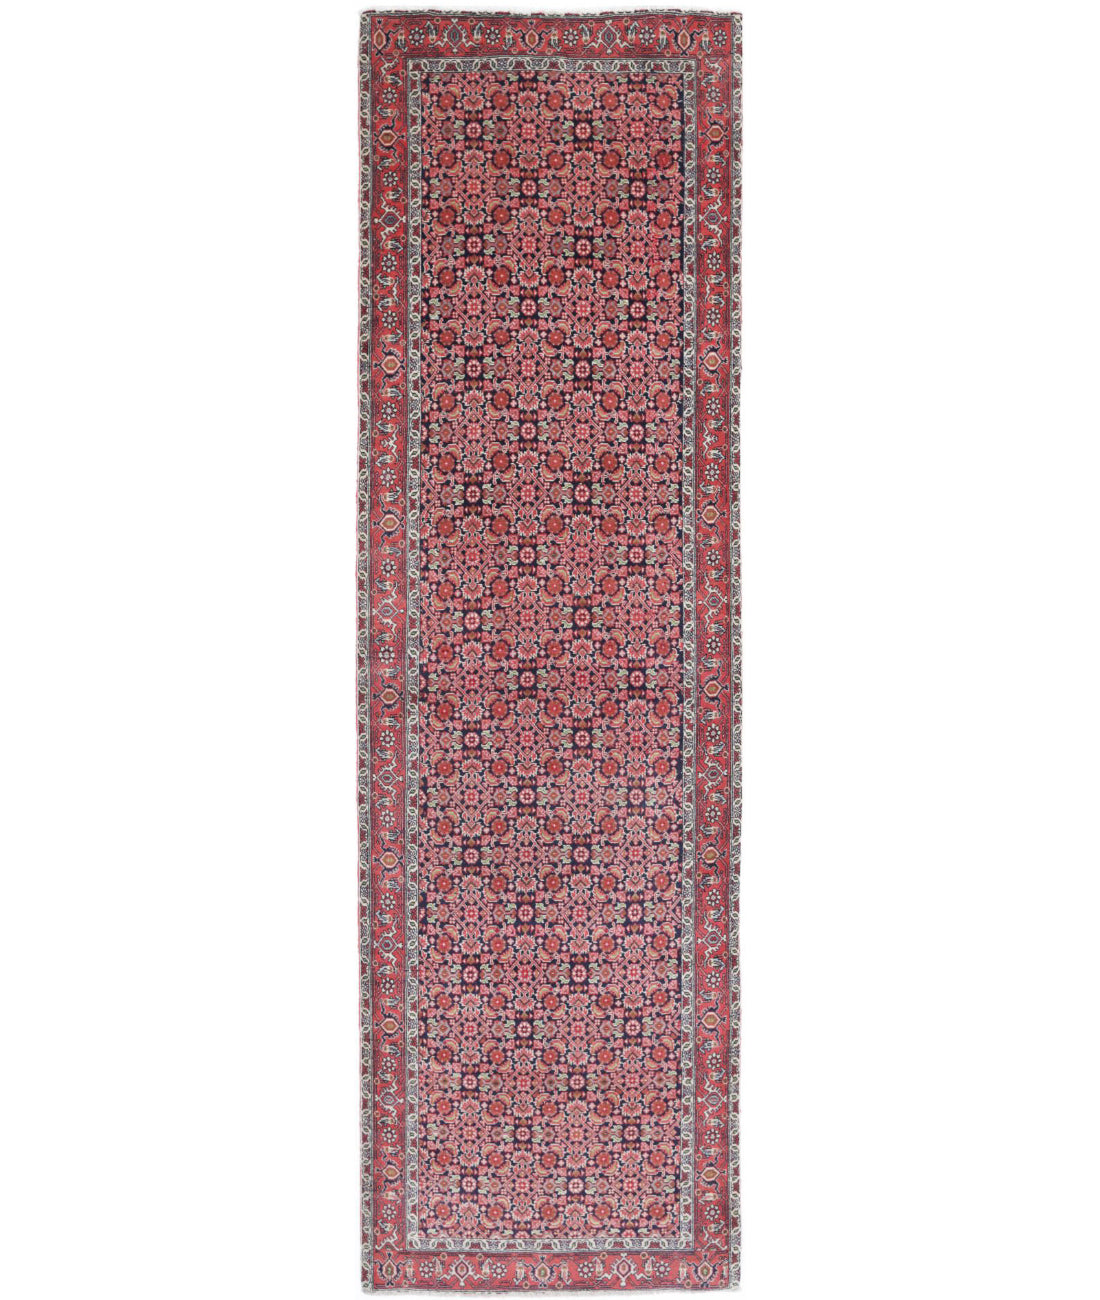 Hand Knotted Persian Bijar Wool Rug - 2'8'' x 9'2'' 2'8'' x 9'2'' (80 X 275) / Blue / Red